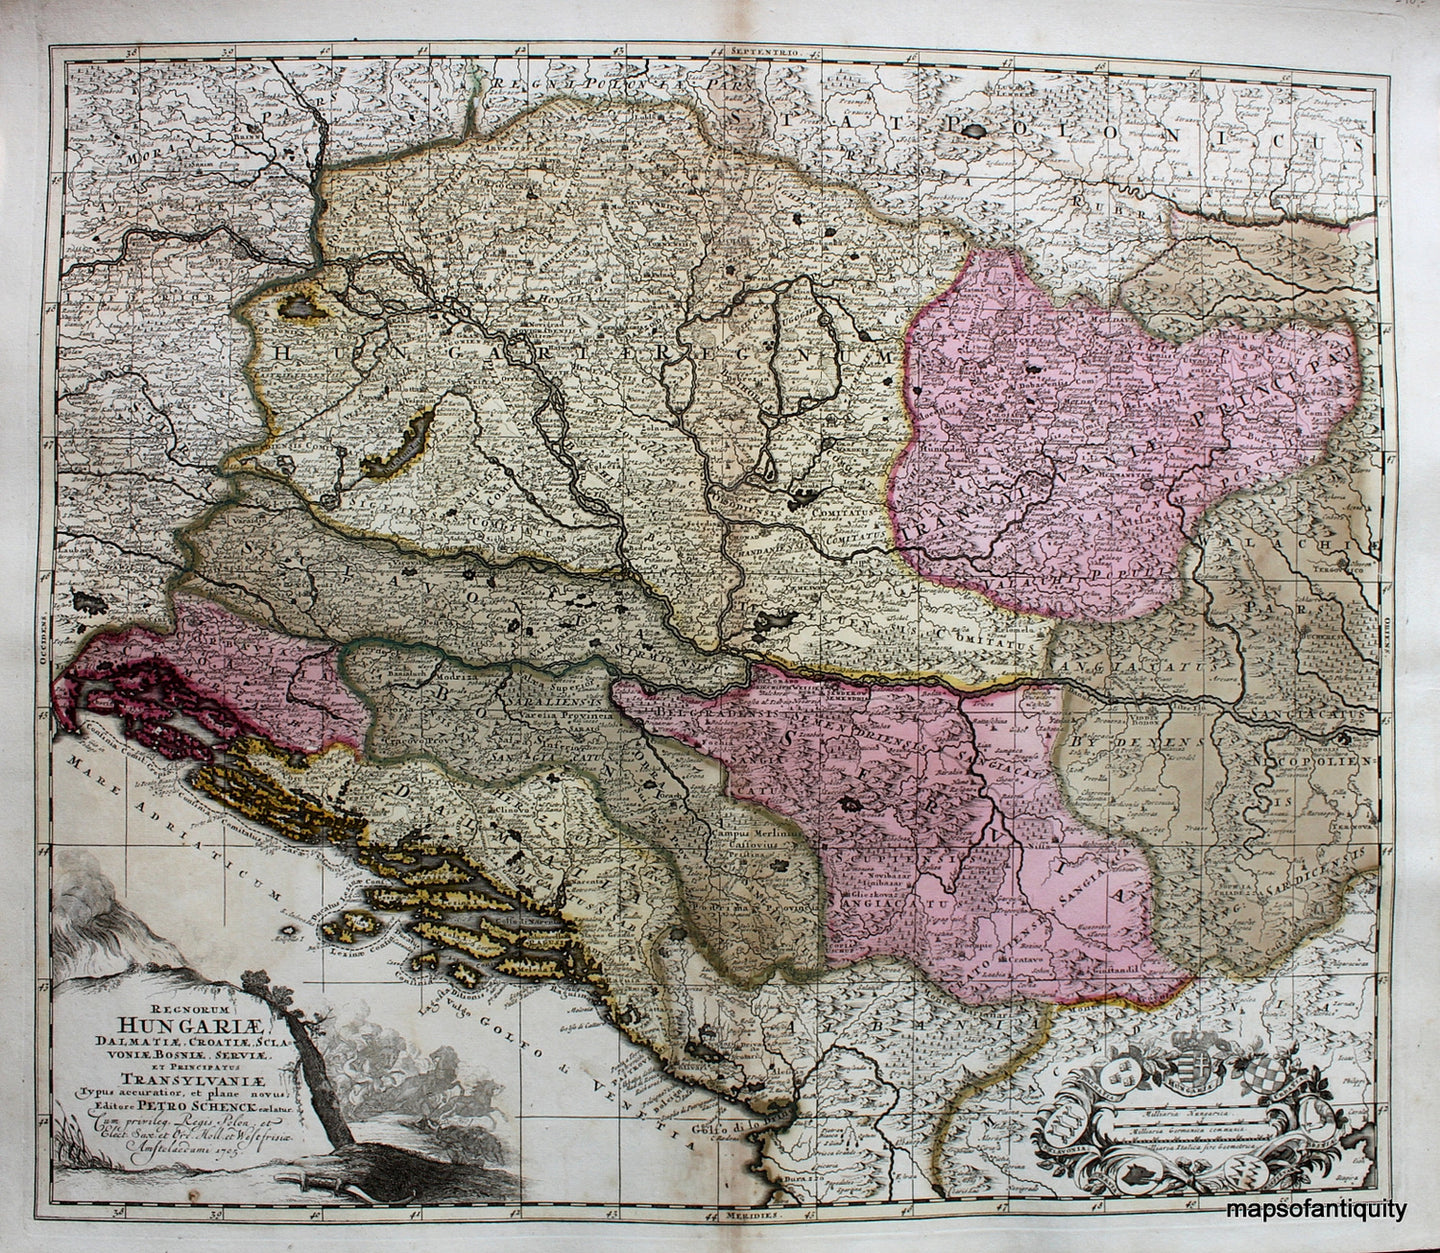 Hand-Colored-Engraved-Antique-Map-Regnorum-Hungariae-Dalmatiae-Croatiae-Sclavoniae-Bosniae-Serviae-at-Principatus-Transylvaniae-**********-Europe-Hungary-1705-Schenck-Maps-Of-Antiquity